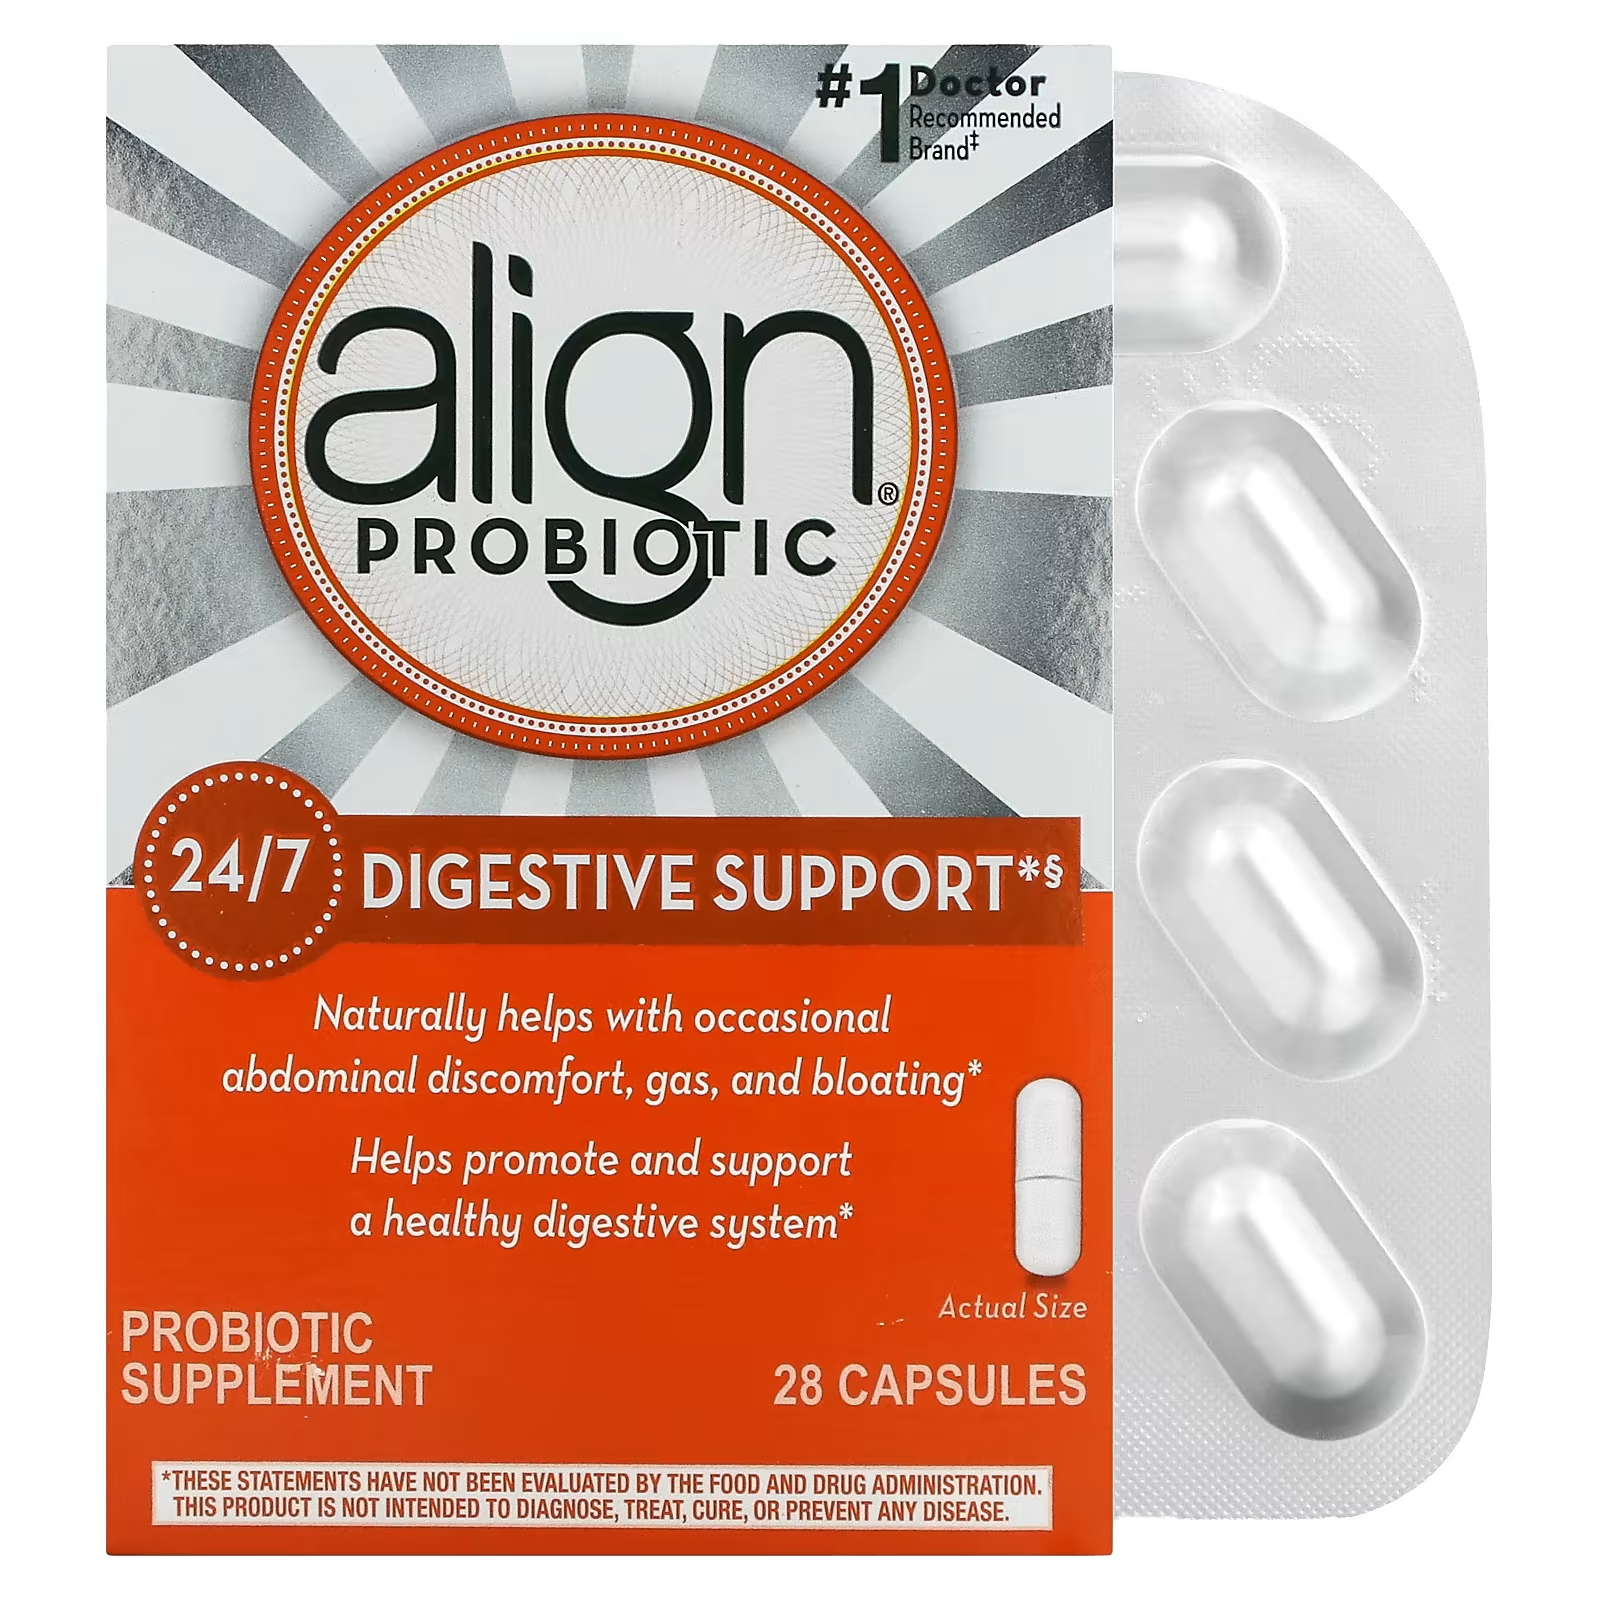 Align Probiotics 24/7 Пробиотическая добавка для поддержки пищеварения, 28 капсул align probiotics поддержка пищеварения 24 7 добавка с пробиотиками 28 капсул